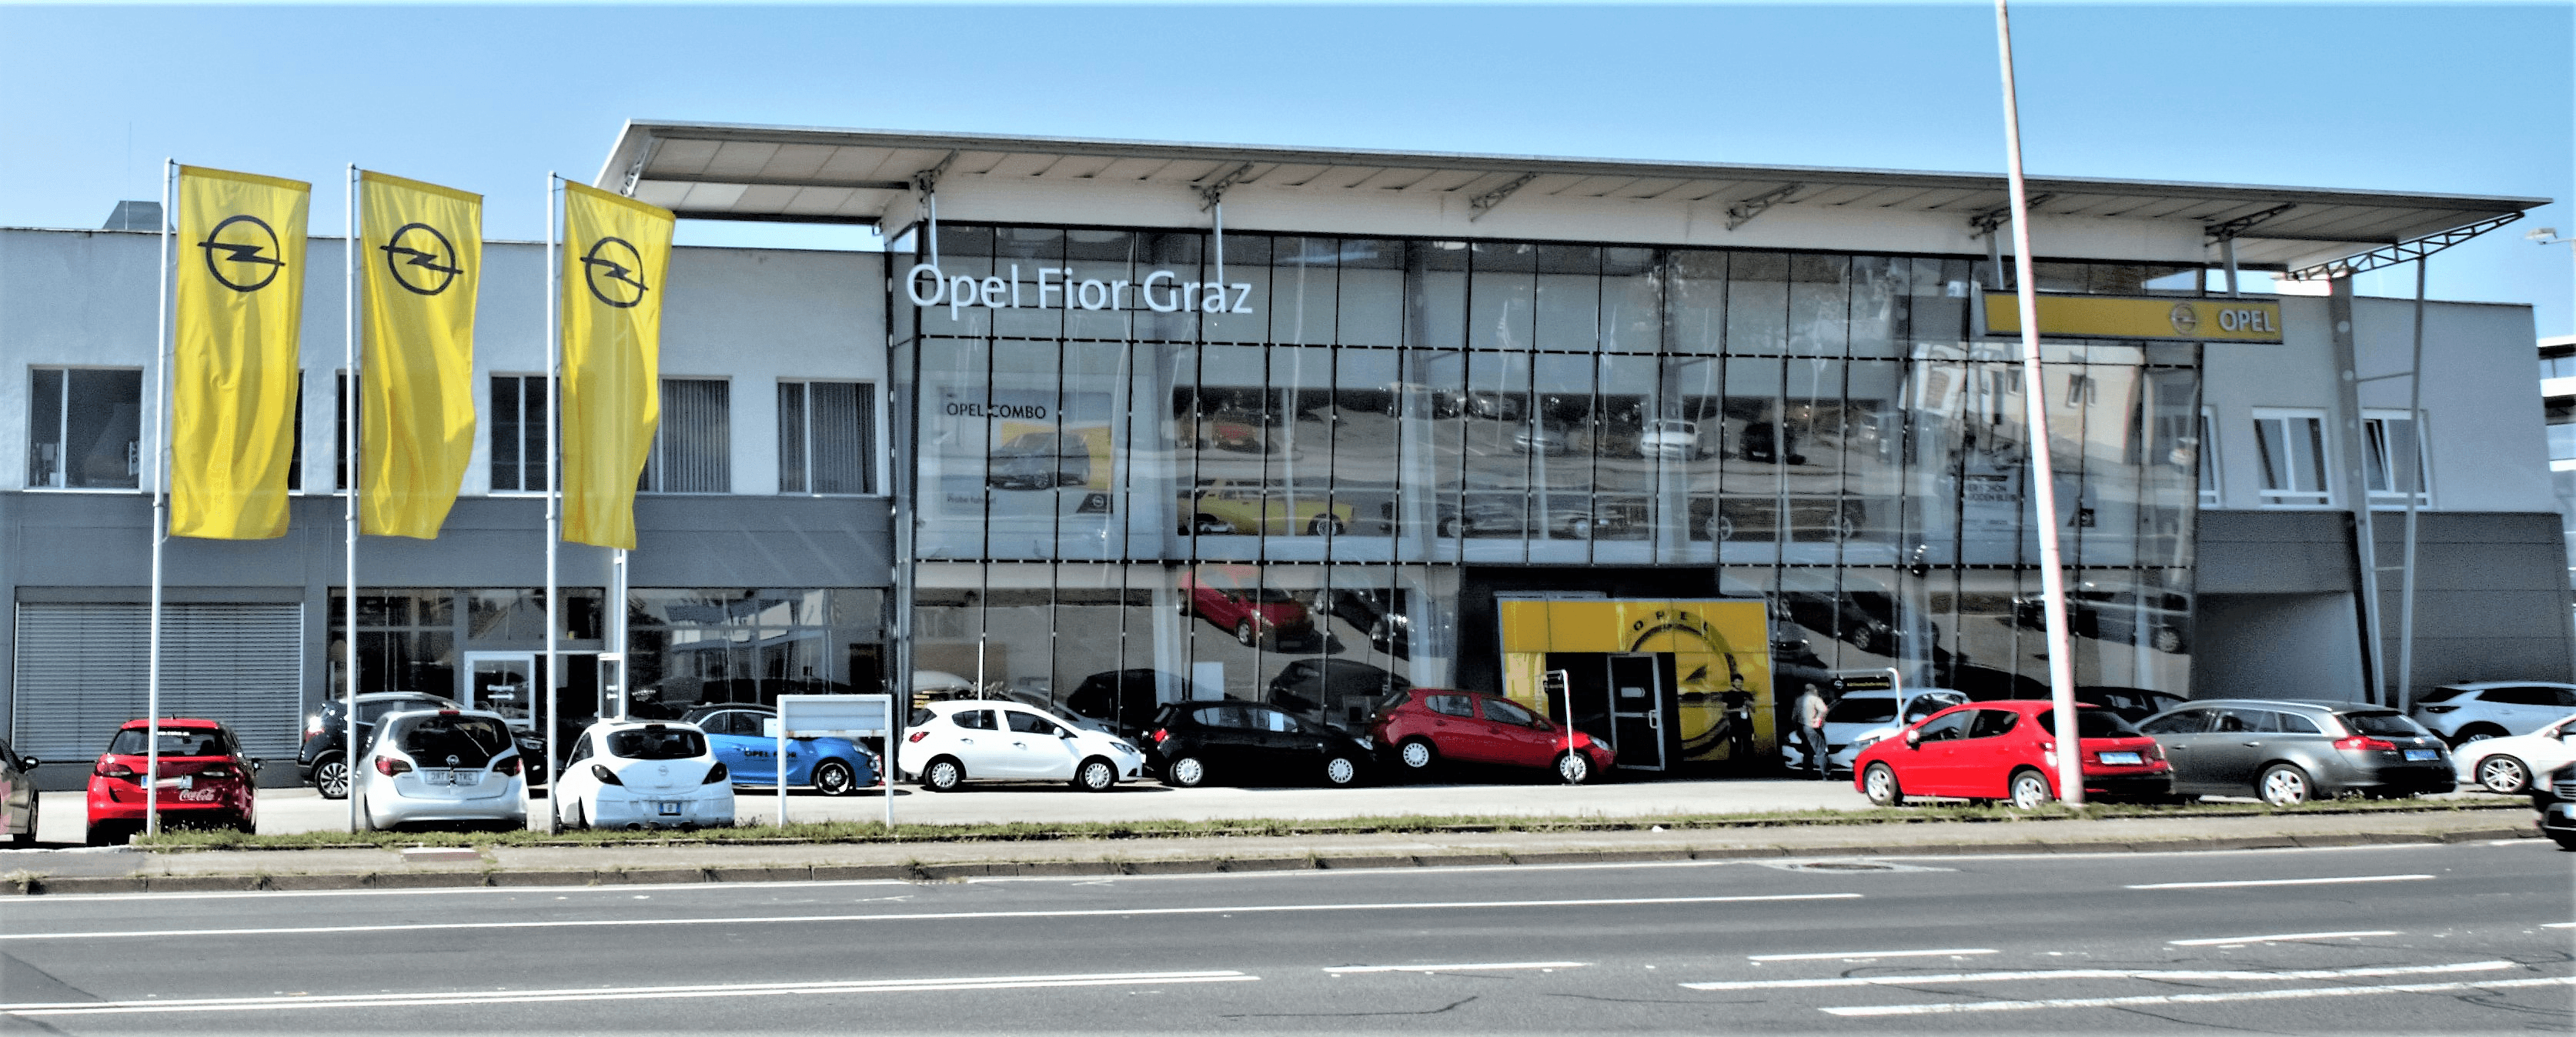 Vorschau - Foto 6 von Opel Fior | Isuzu Fior Graz